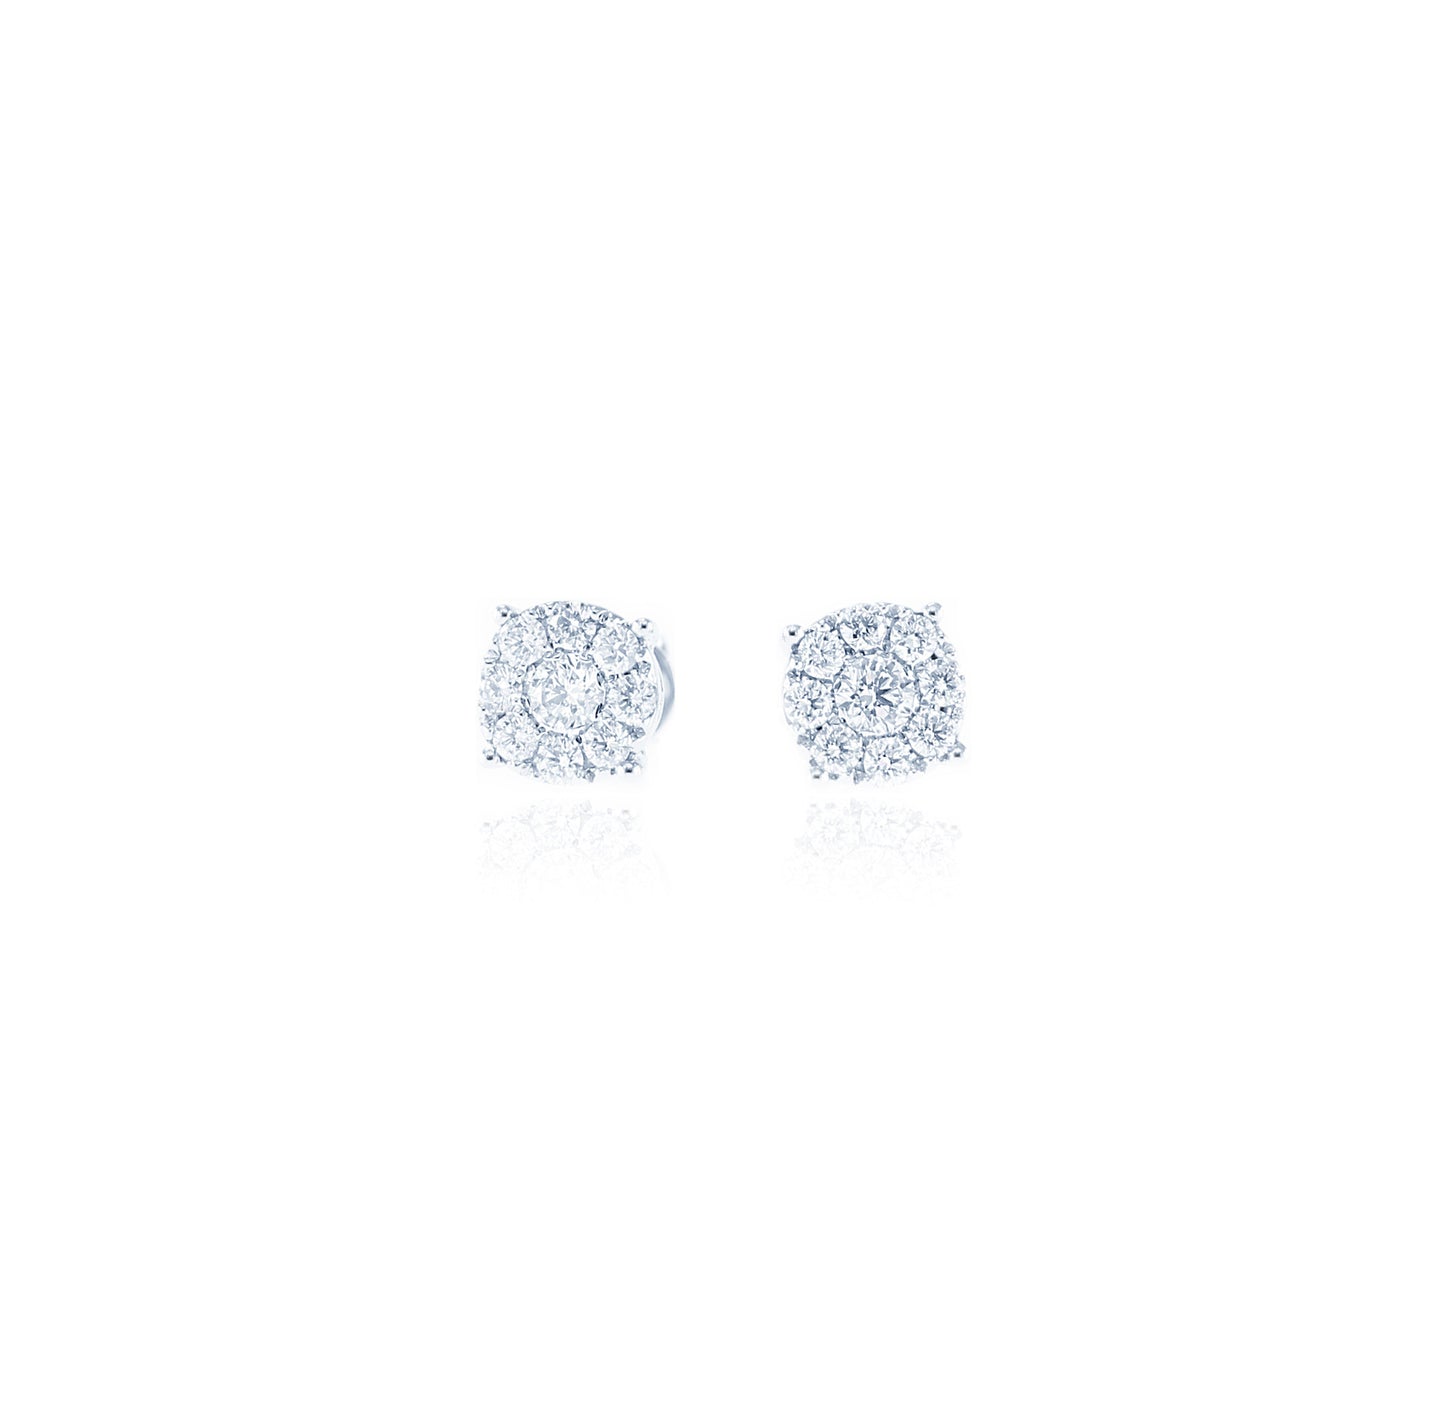 Stunning Composite Diamond Stud Earrings in 18K White Gold